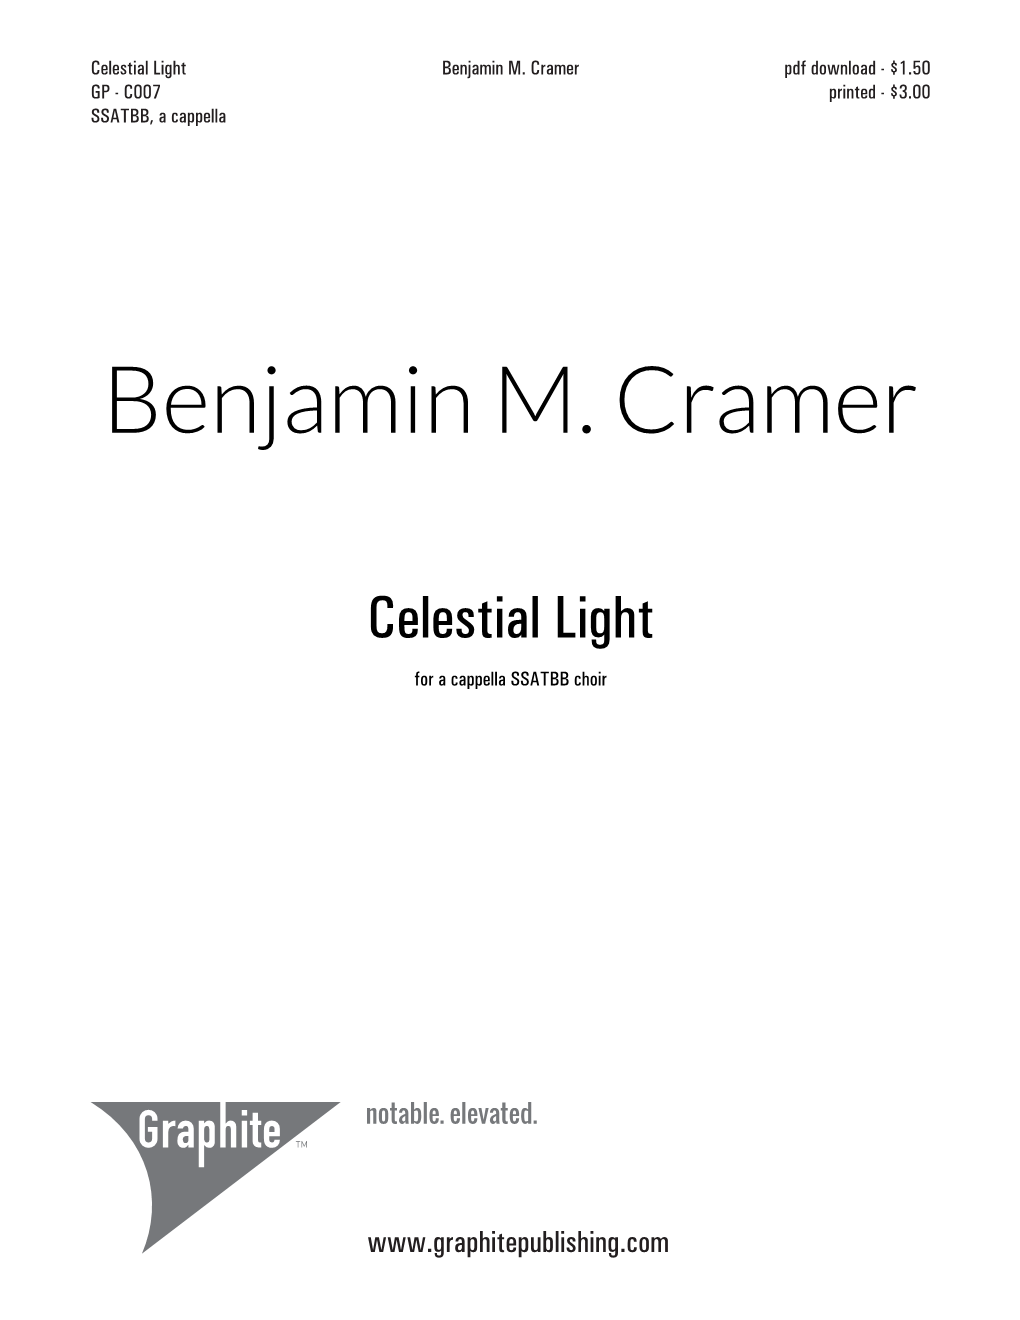 Benjamin M. Cramer Pdf Download - $1.50 GP - C007 Printed - $3.00 SSATBB, a Cappella